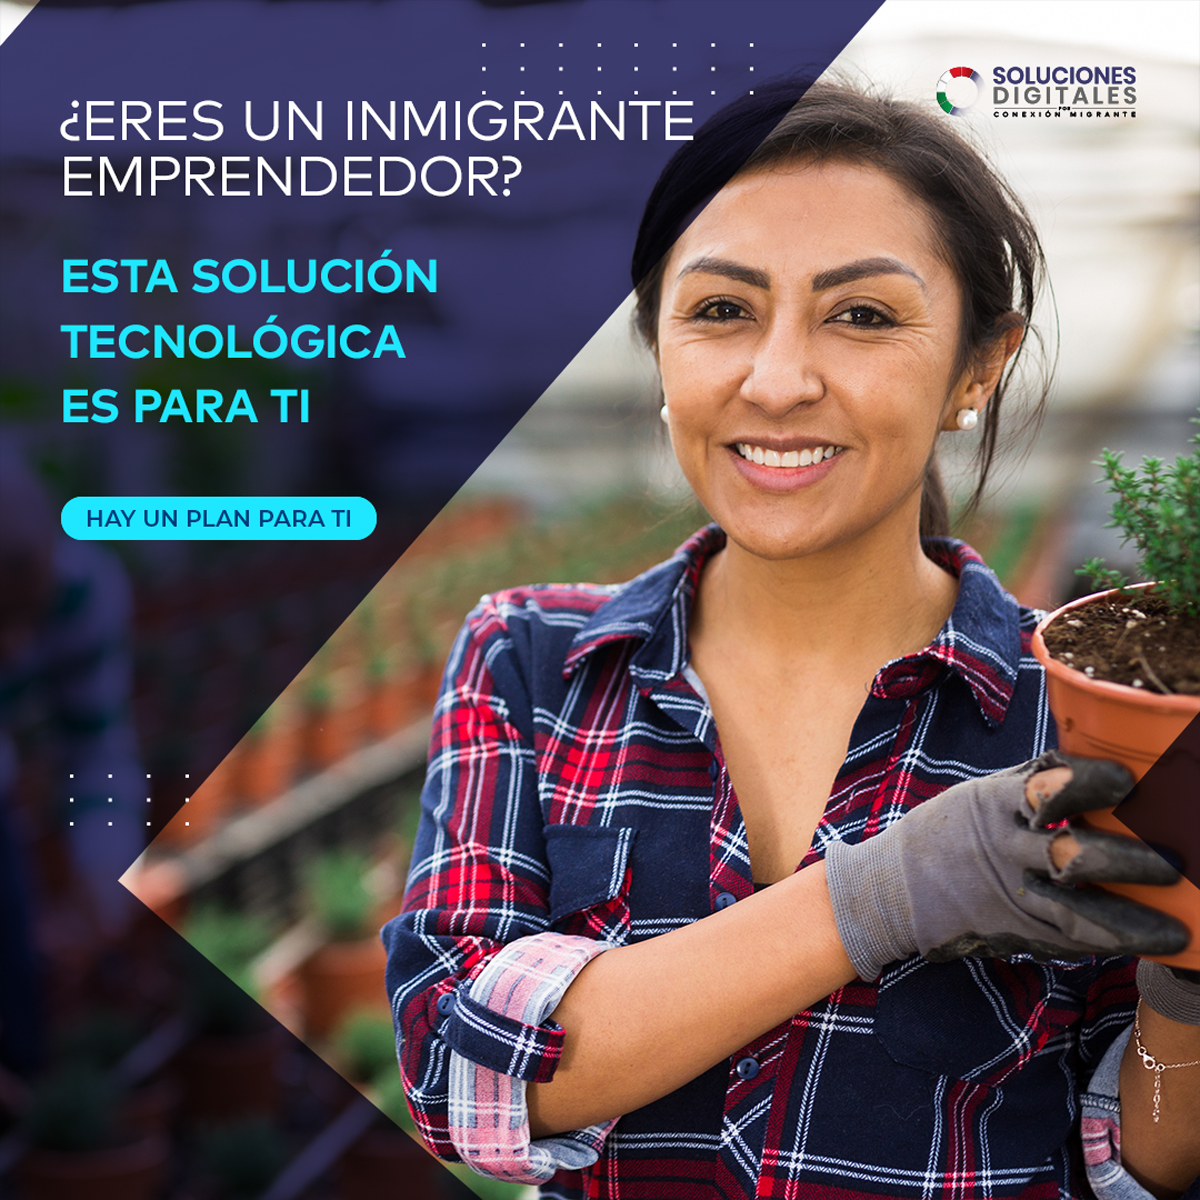 Conexión Migrante lanza Soluciones Digitales, para ayudar a los migrantes emprendedores en Estados Unidos | Conexión Migrante